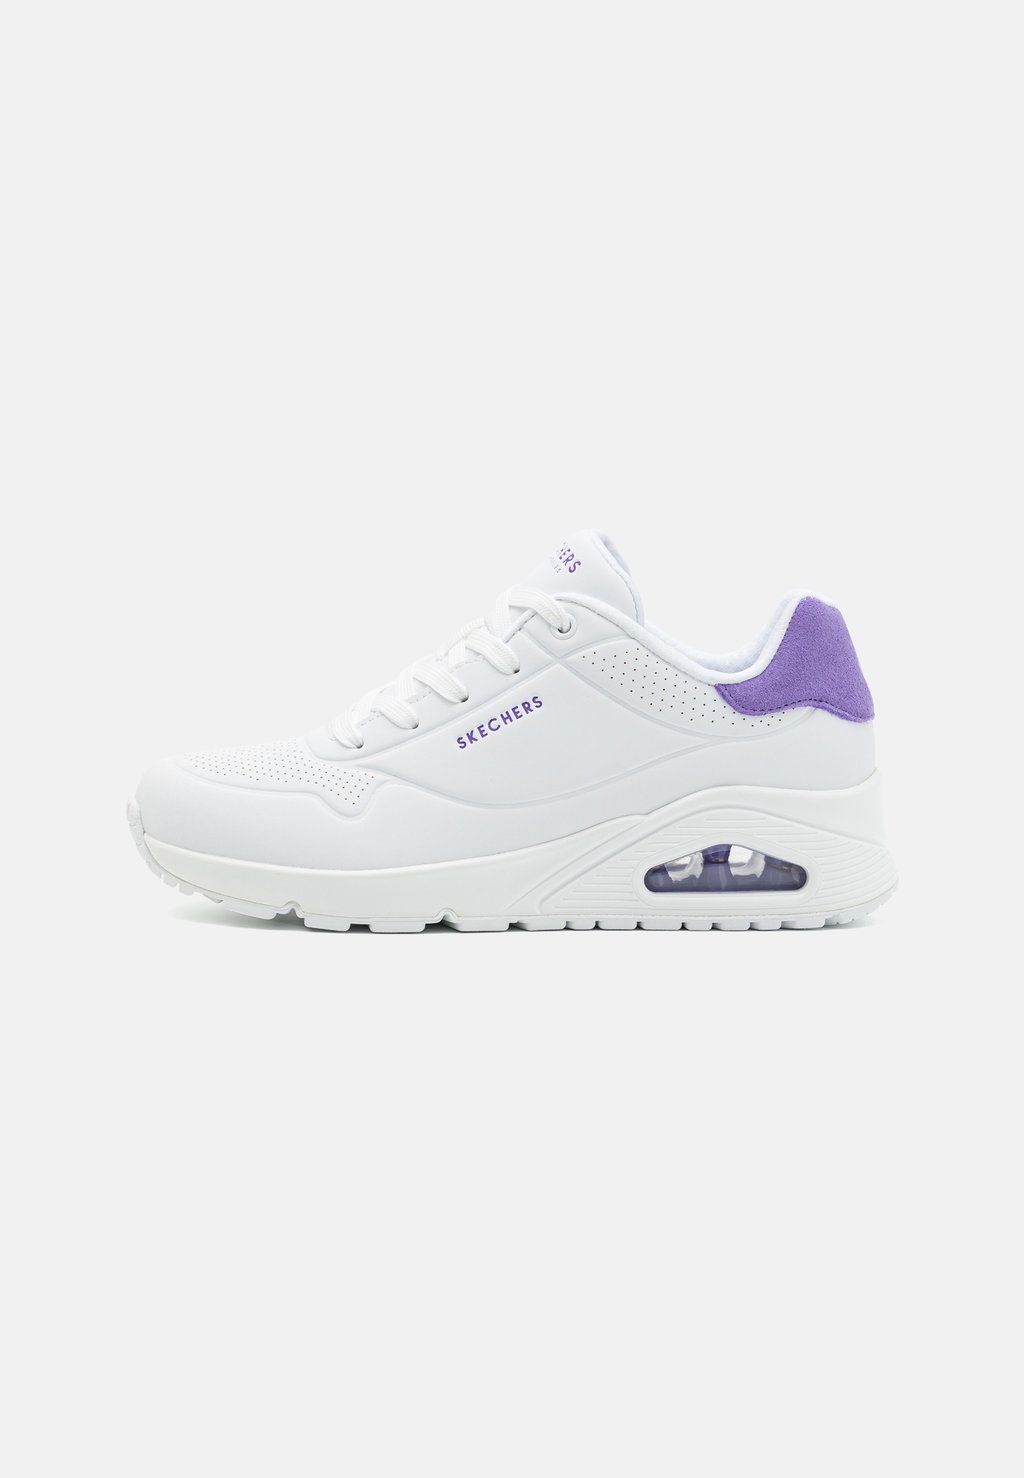 Низкие кроссовки Uno Skechers Sport, цвет white/purple